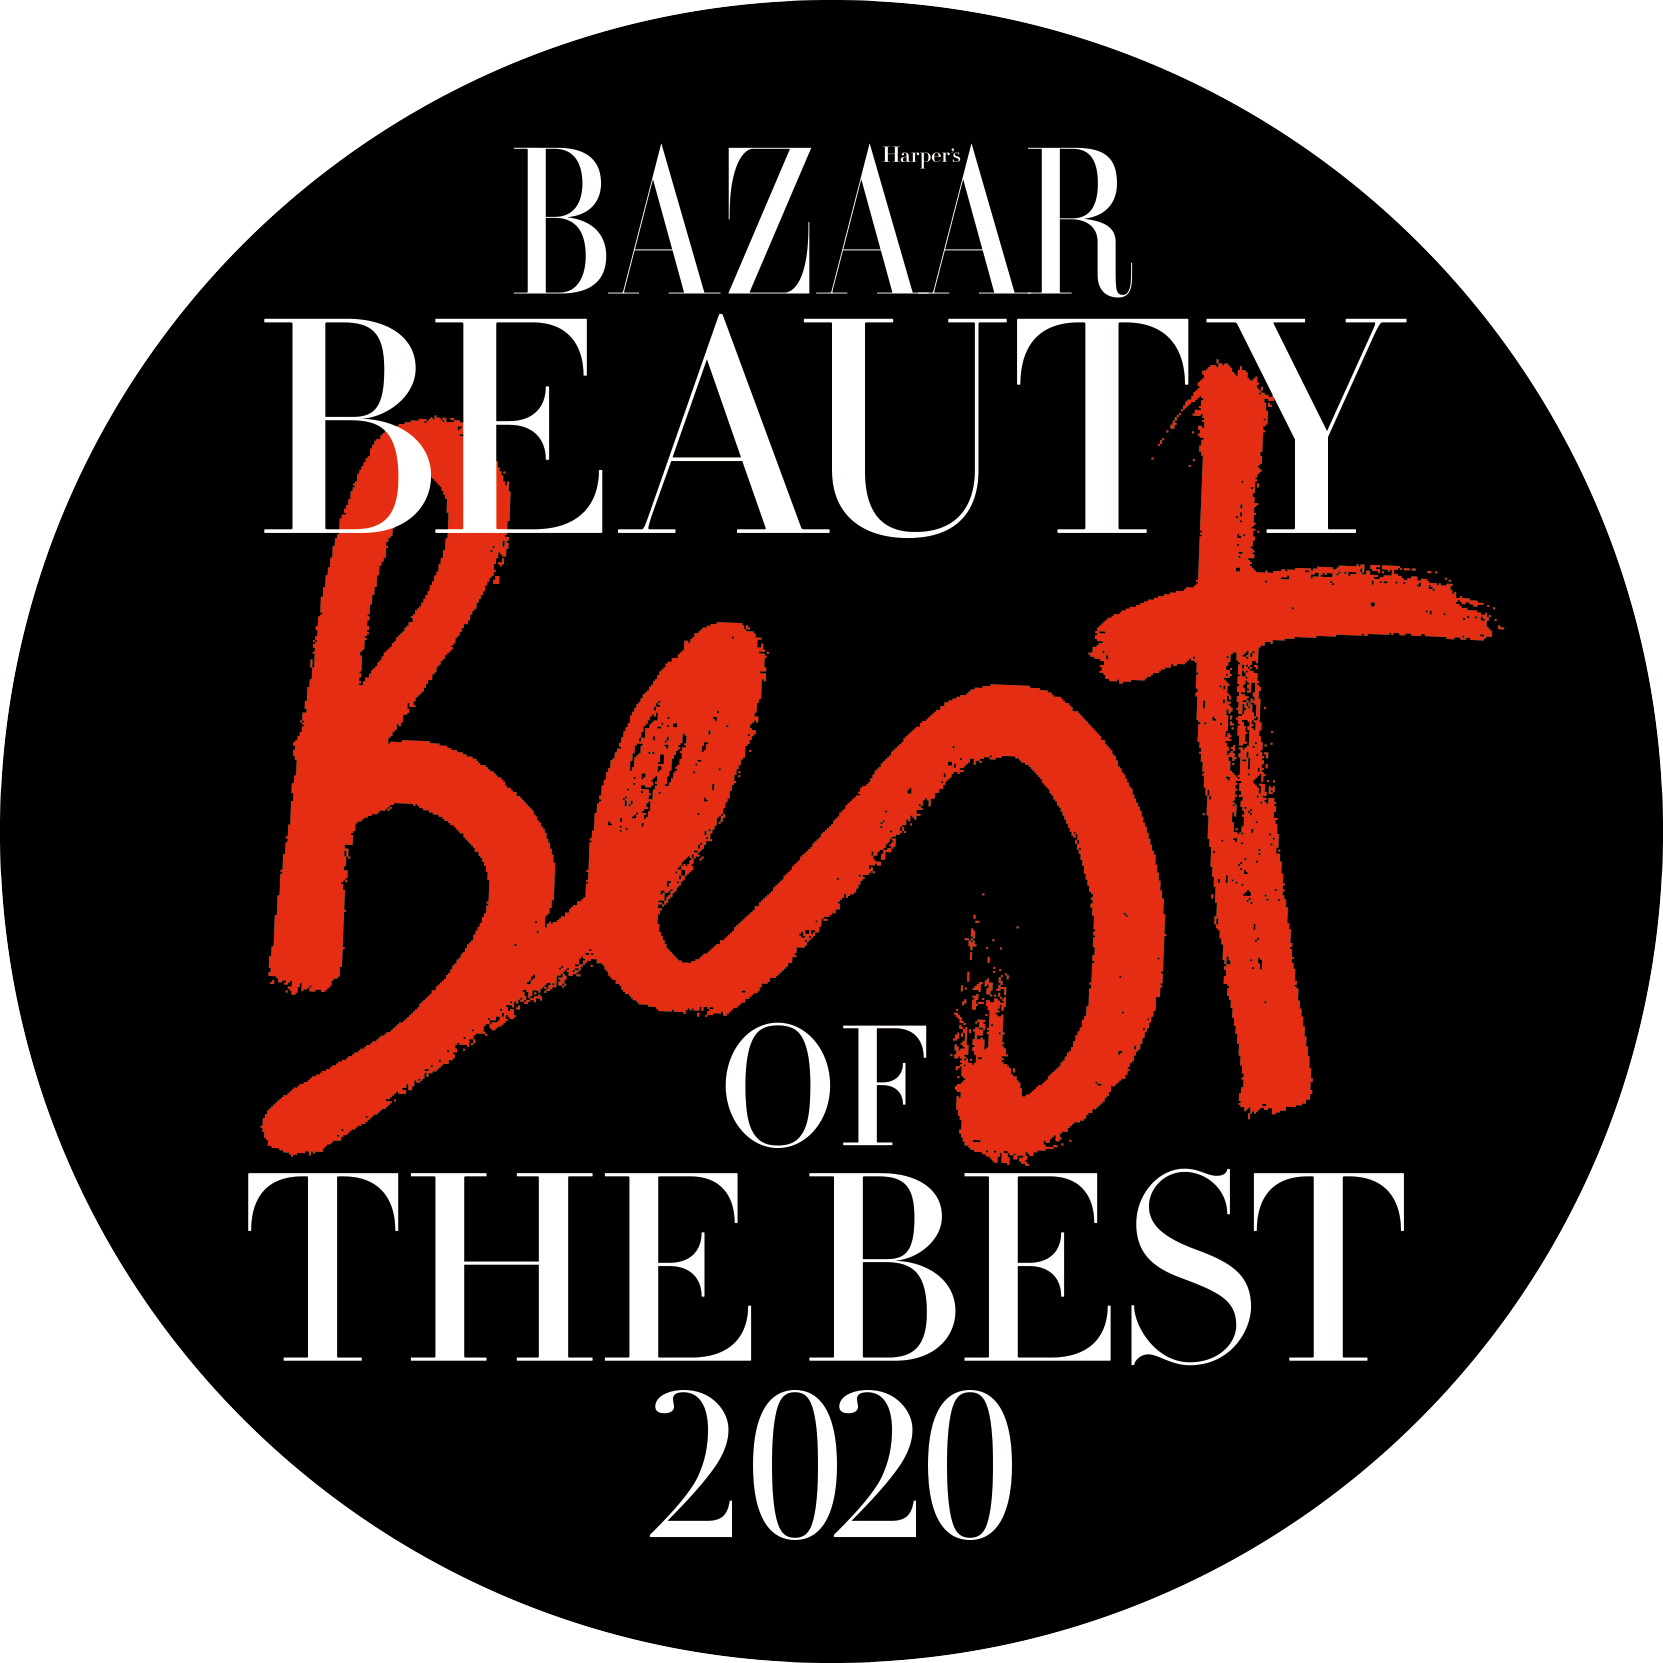 Bazaar Beauty Best of the Best 2020 logo.